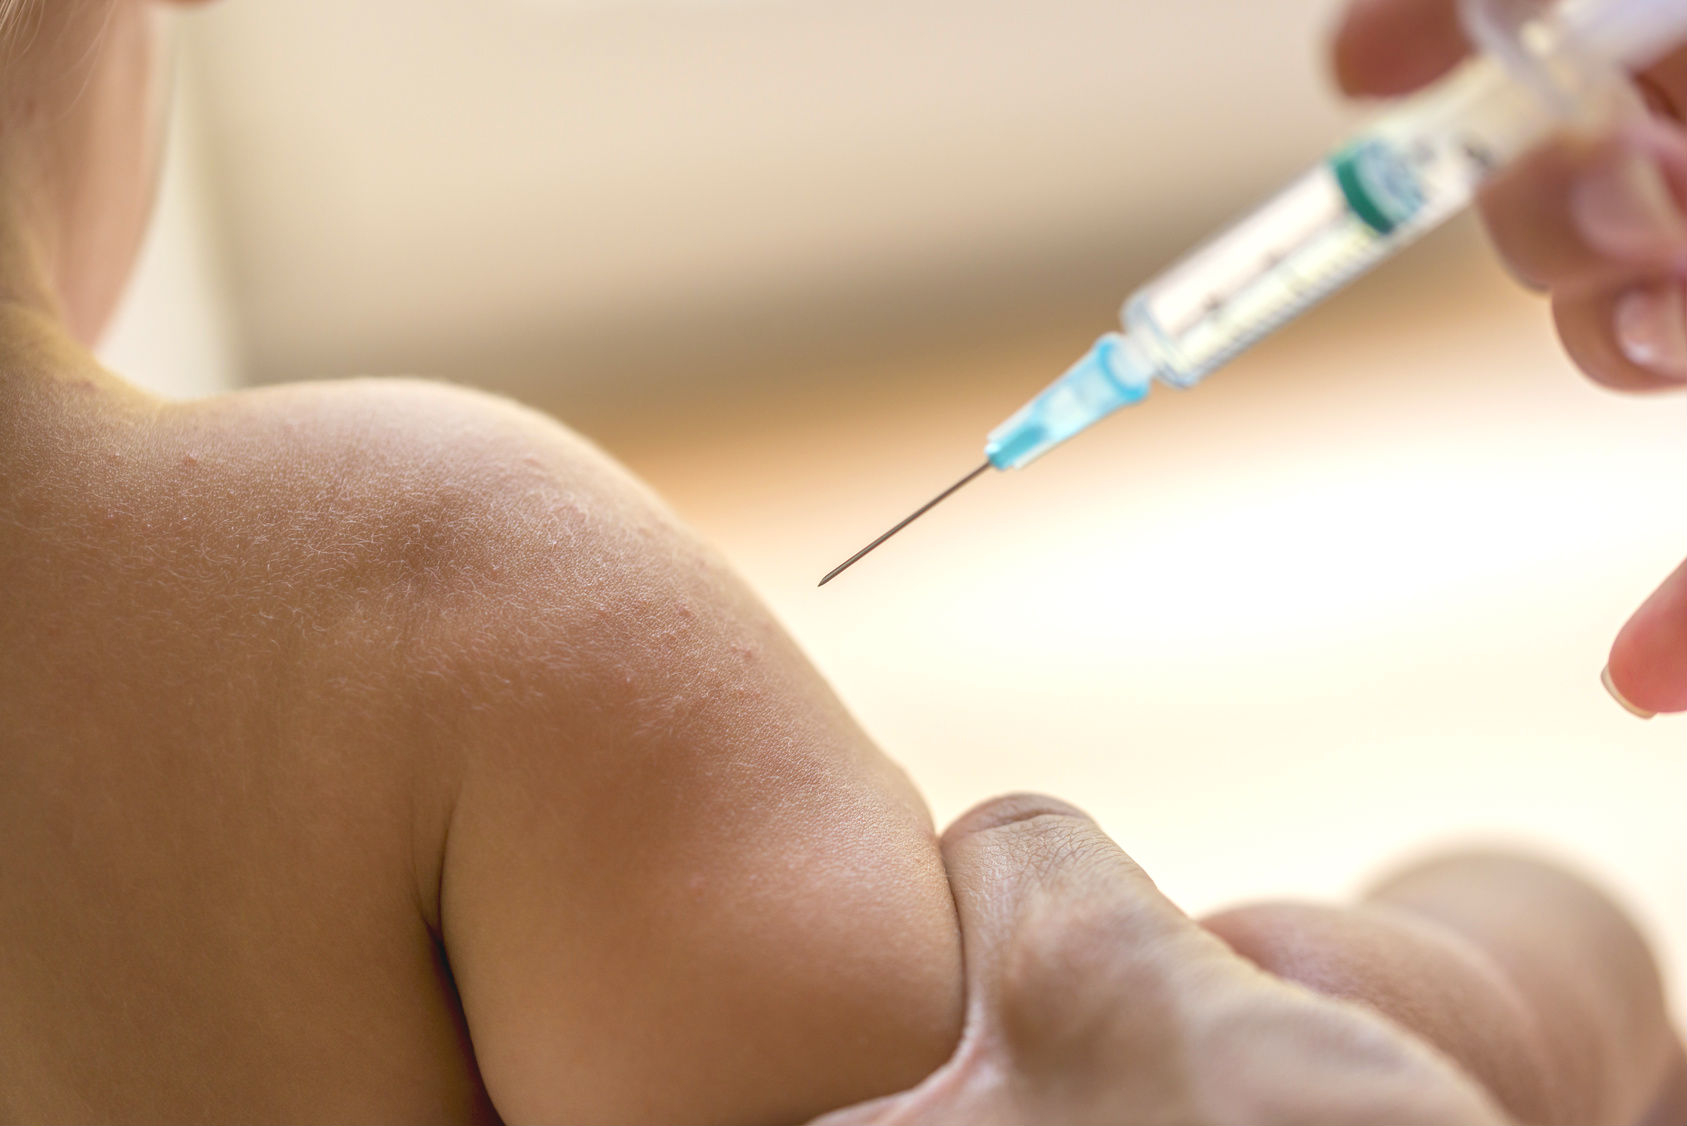 Frankreich: Pflichtimpfungen für Kinder deutlich ausgeweitet – Kritiker fürchten Nebenwirkungen